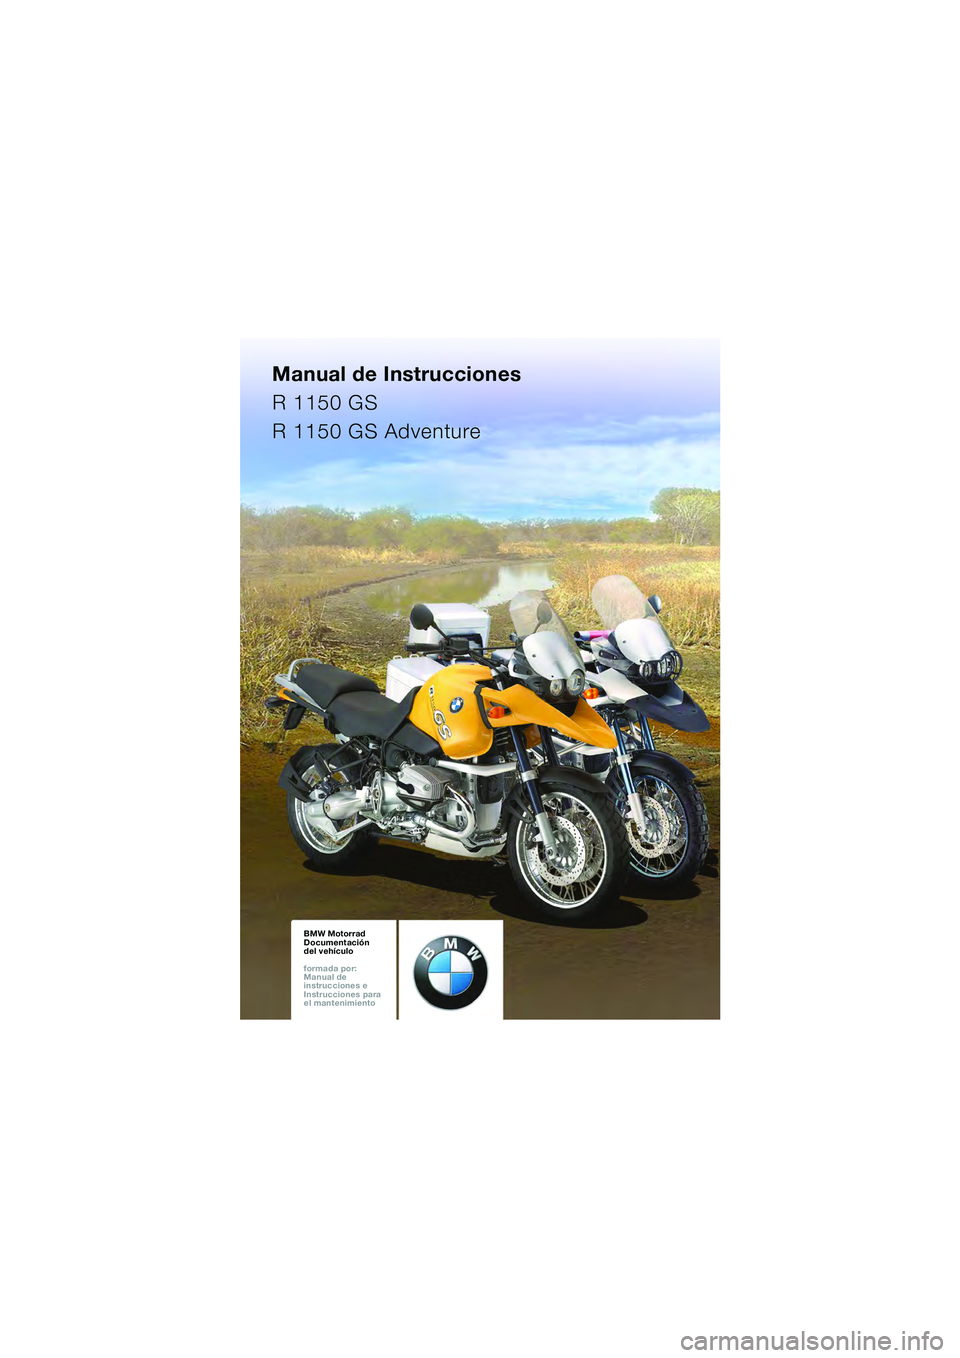 BMW MOTORRAD R 1150 GS 2002  Manual de instrucciones (in Spanish) Manual de Instrucciones
R 1150 GS
R 1150 GS Adventure
BMW Motorrad
Documentación 
del vehículo
formada por: 
Manual de 
instrucciones e 
Instrucciones para 
el mantenimiento
10GEBKe6book.book  Seite